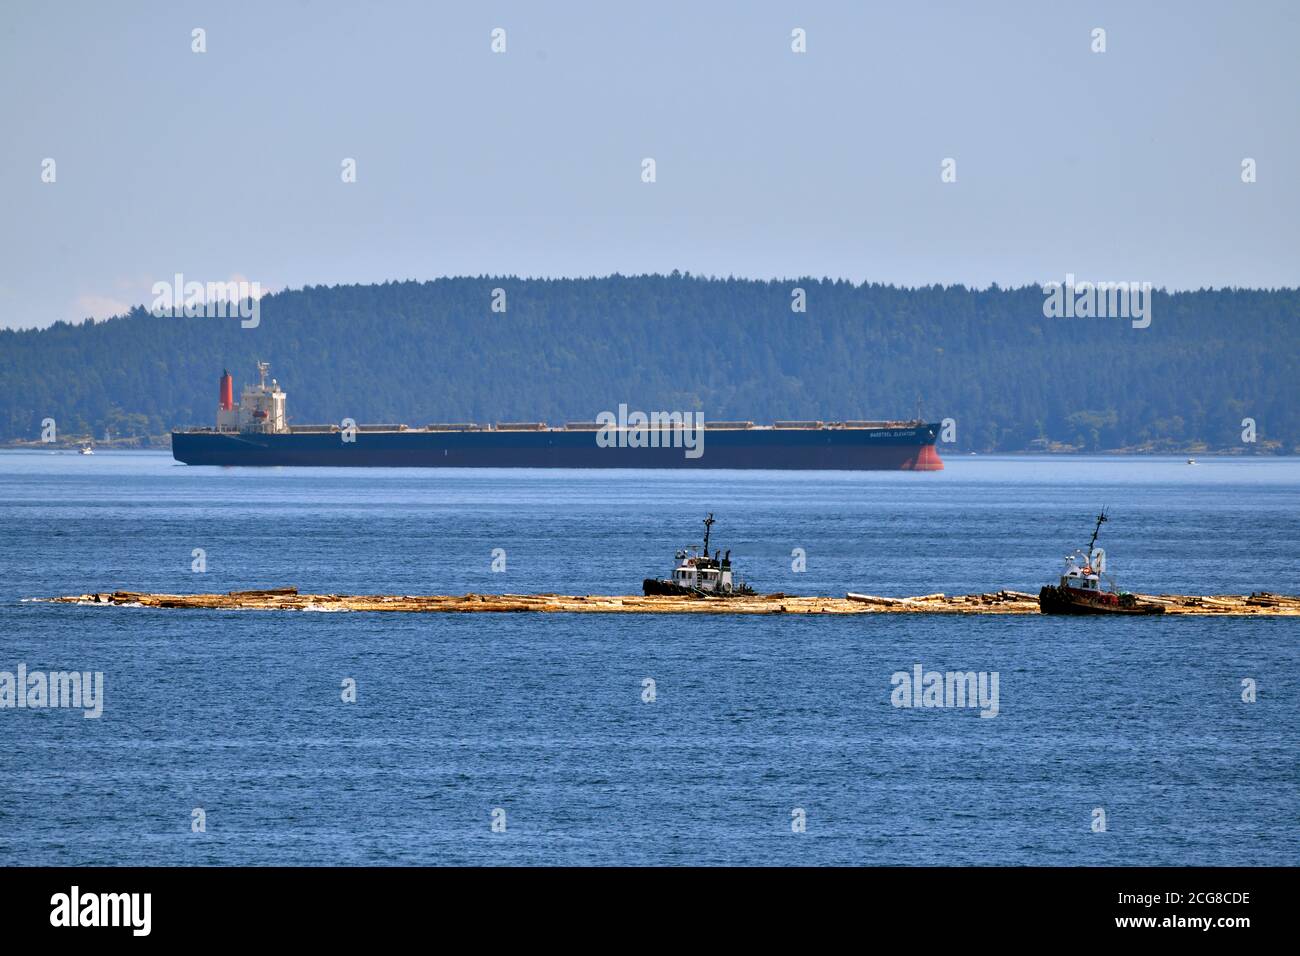 Zwei Schlepper, die einen Holzboom vor einem Ozeanschiff arbeiten, das im Stuart Kanal nahe Vancouver Island British Columbia Kanada vor Anker liegt. Stockfoto